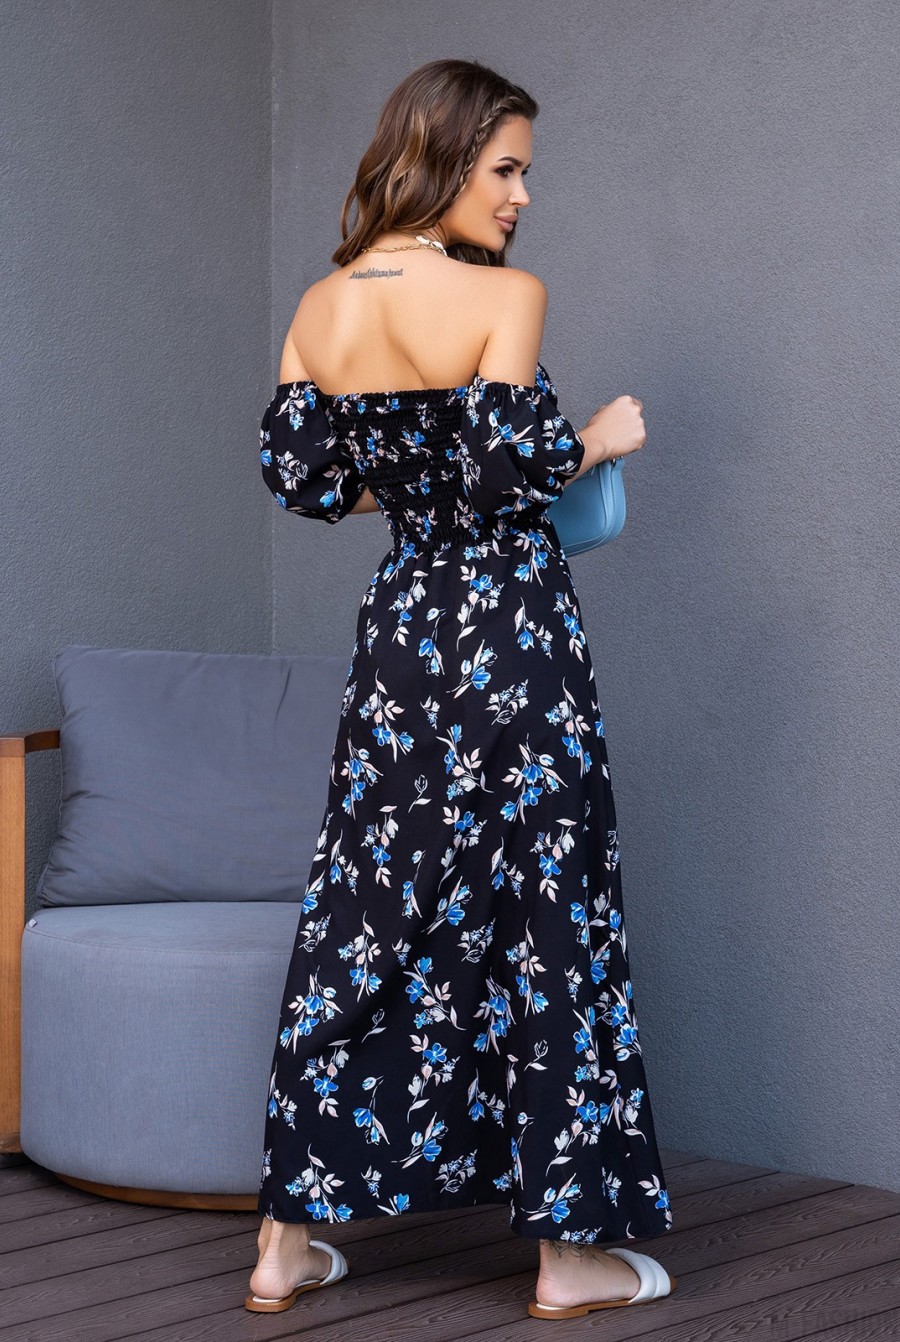 Черно-голубое цветочное платье с лифом-жаткой - Фото 3